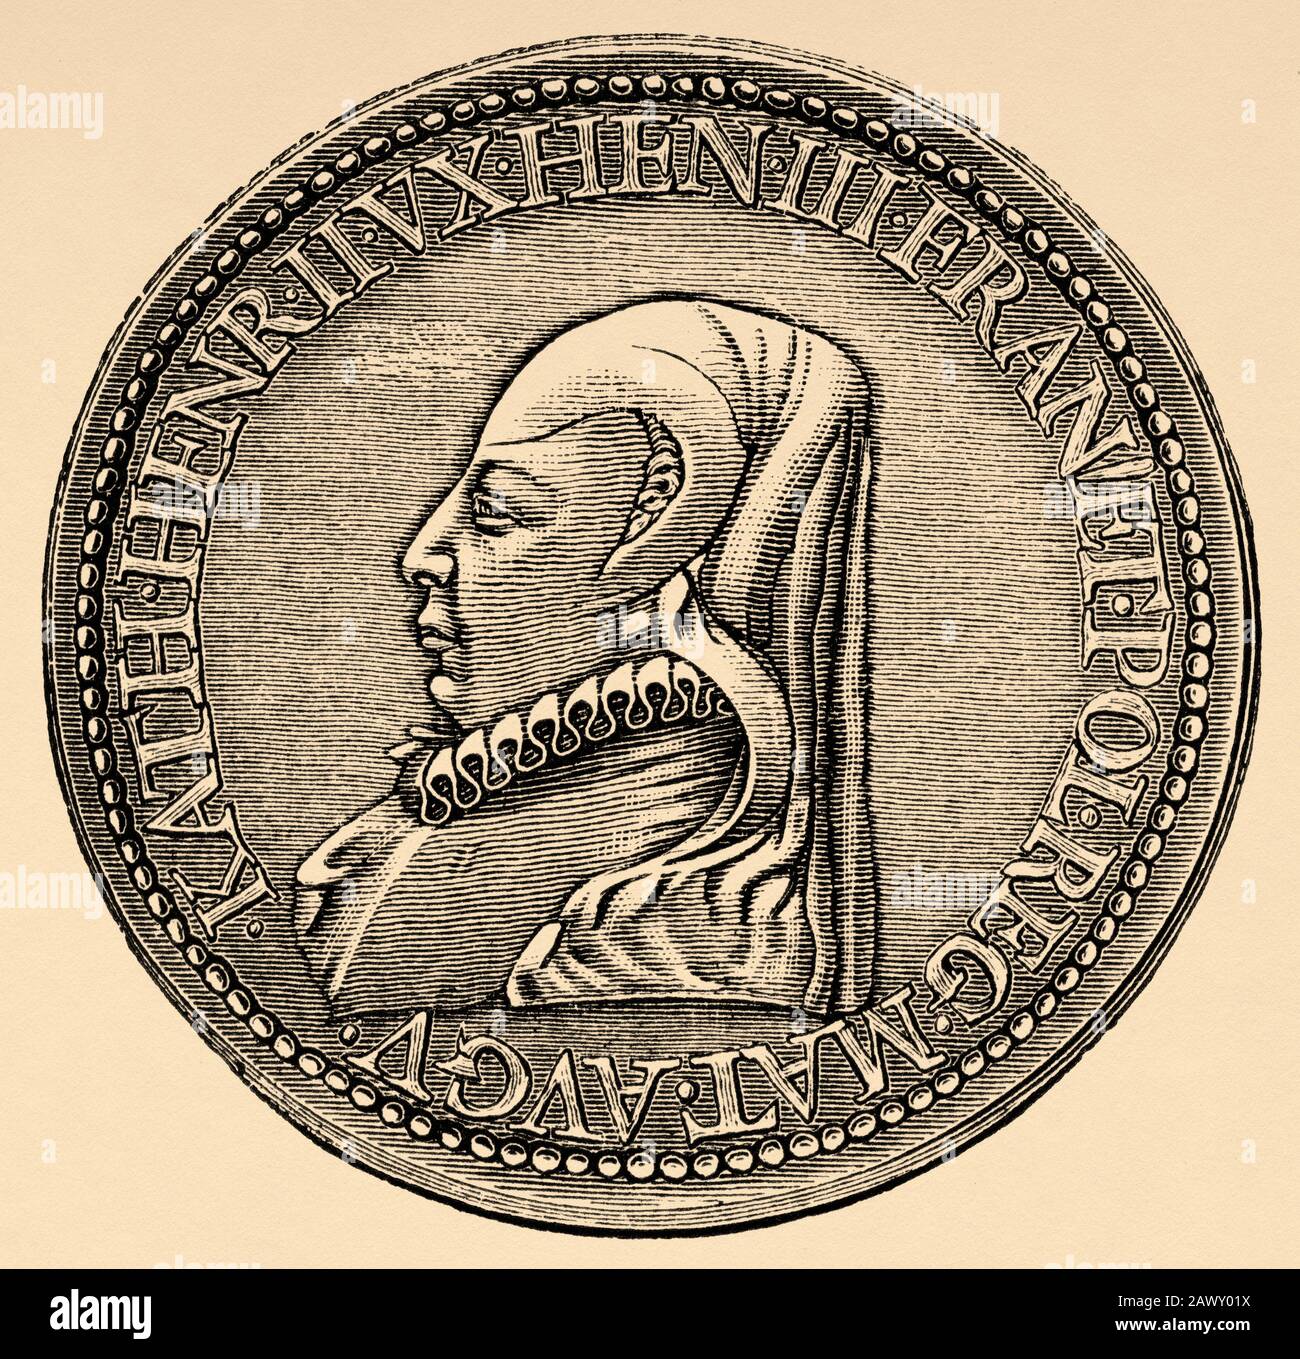 Le sceau de la Médaille du portrait de Catherine de Medici (Florence, Italie, 13 avril 1519 - Château de Blois, France, 5 janvier 1589) était un noble italien Banque D'Images